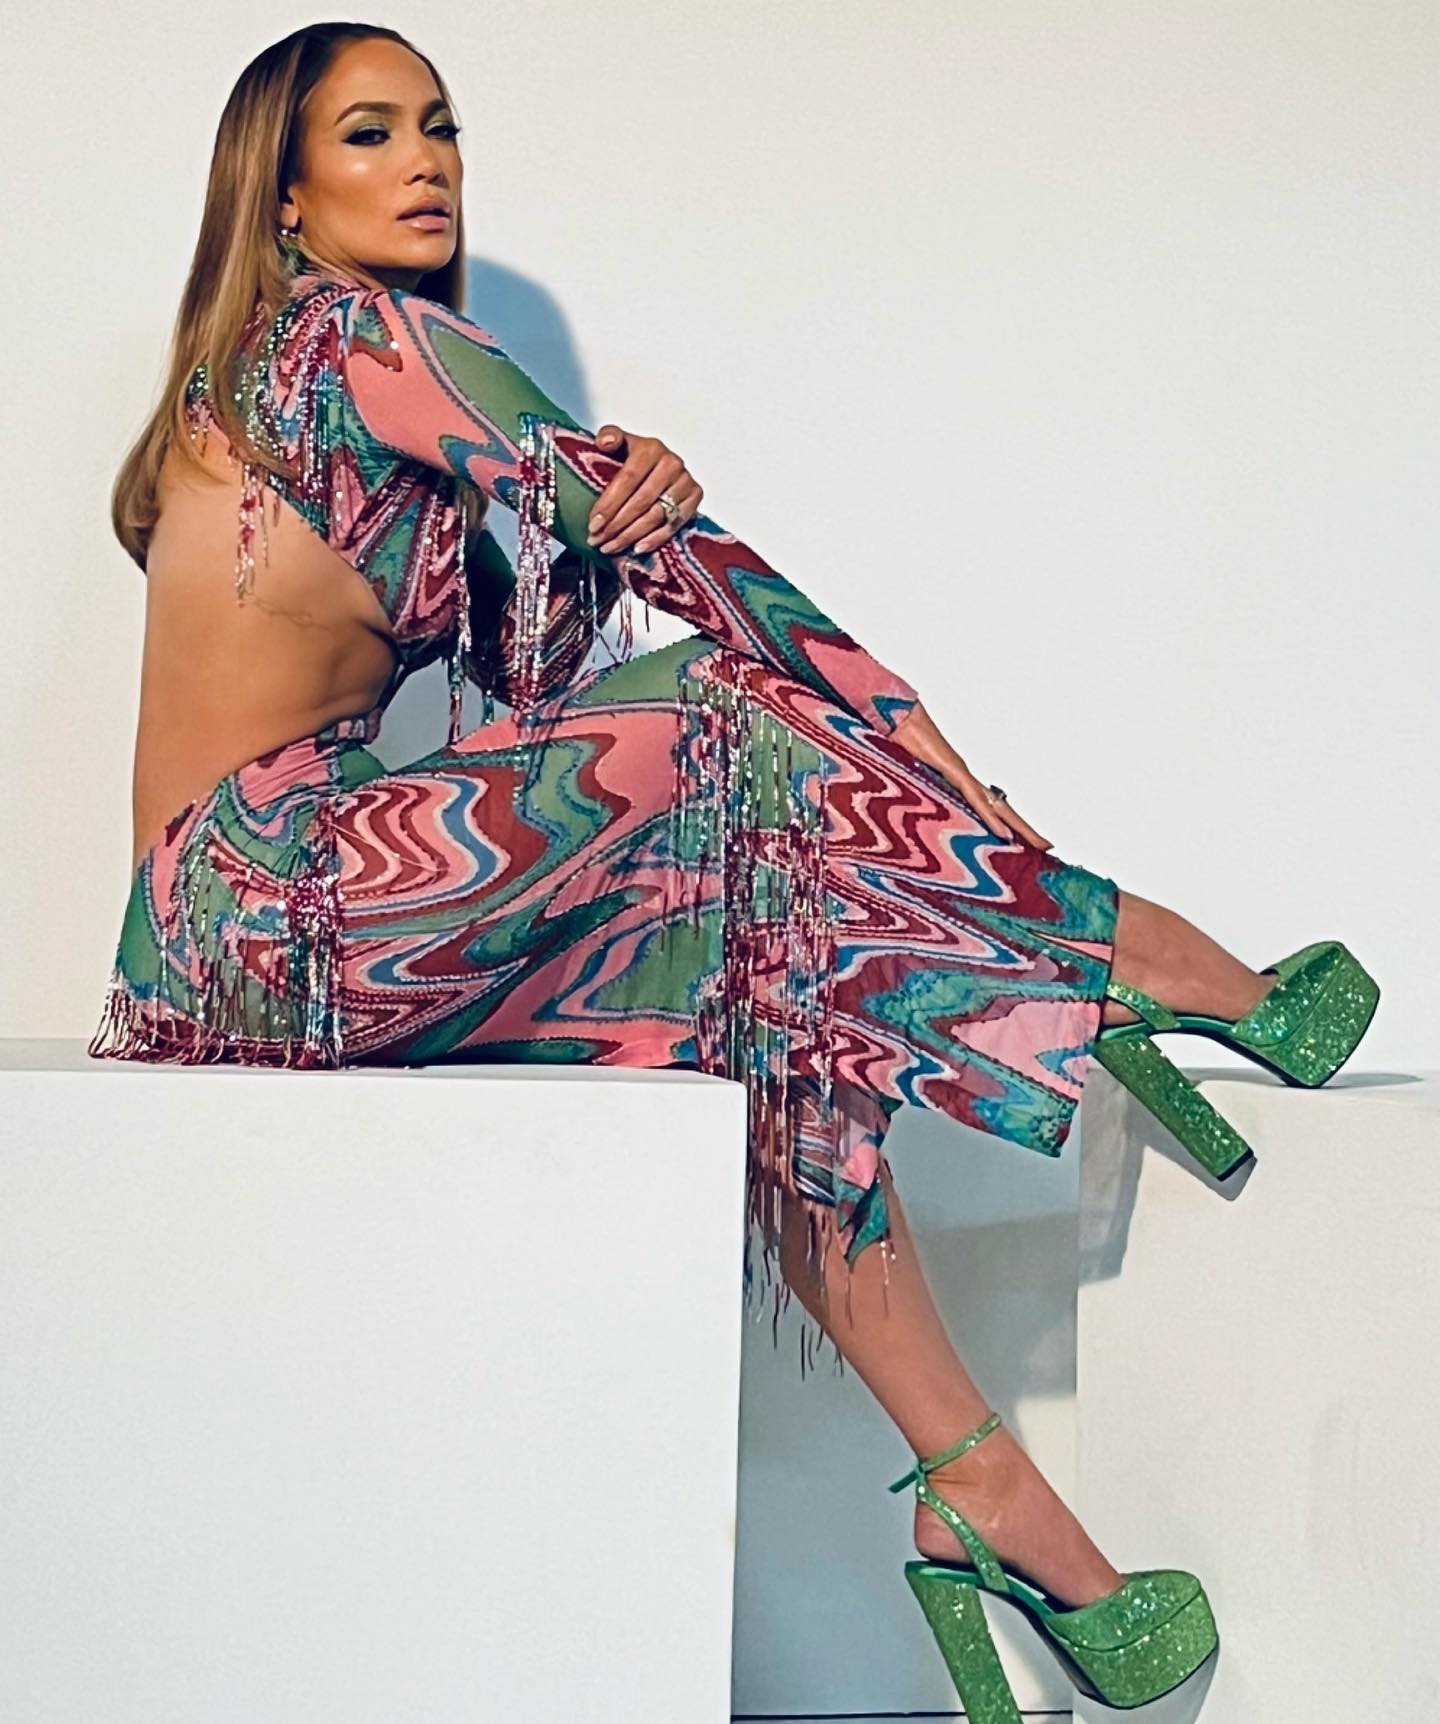 Дженніфер Лопес у сукні з вирізами під грудьми у стилі 70-х зробила фурор яскравим вбранням